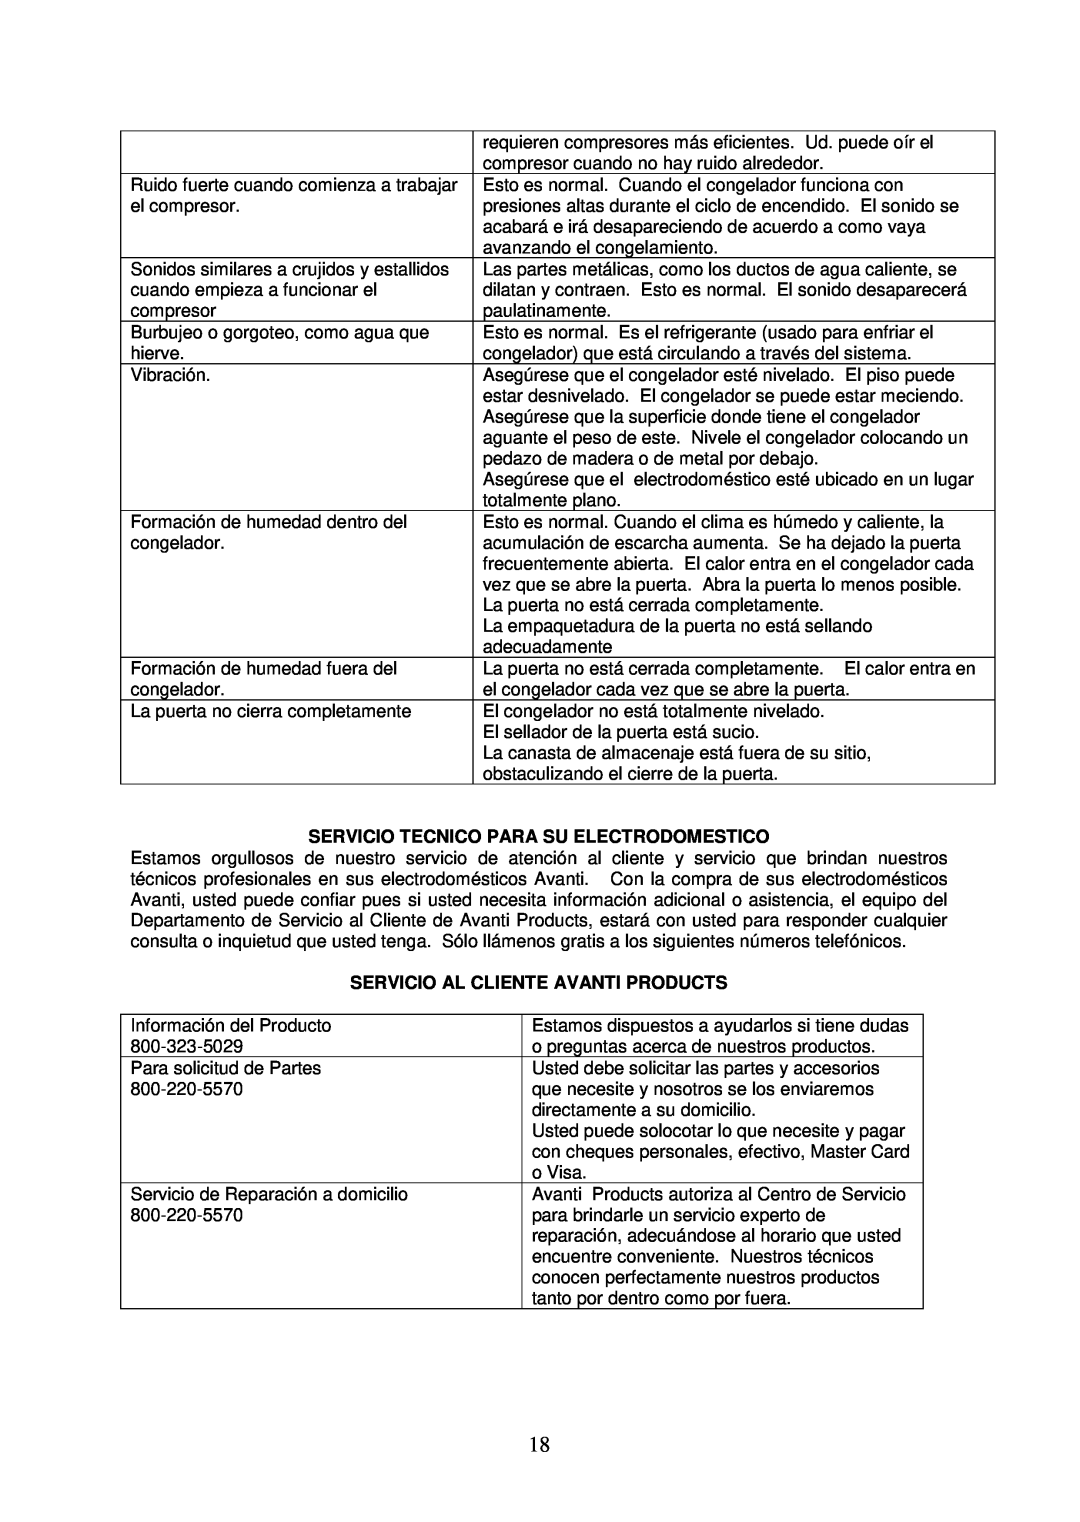 Avanti CF146 instruction manual Servicio Tecnico Para Su Electrodomestico, Servicio Al Cliente Avanti Products 